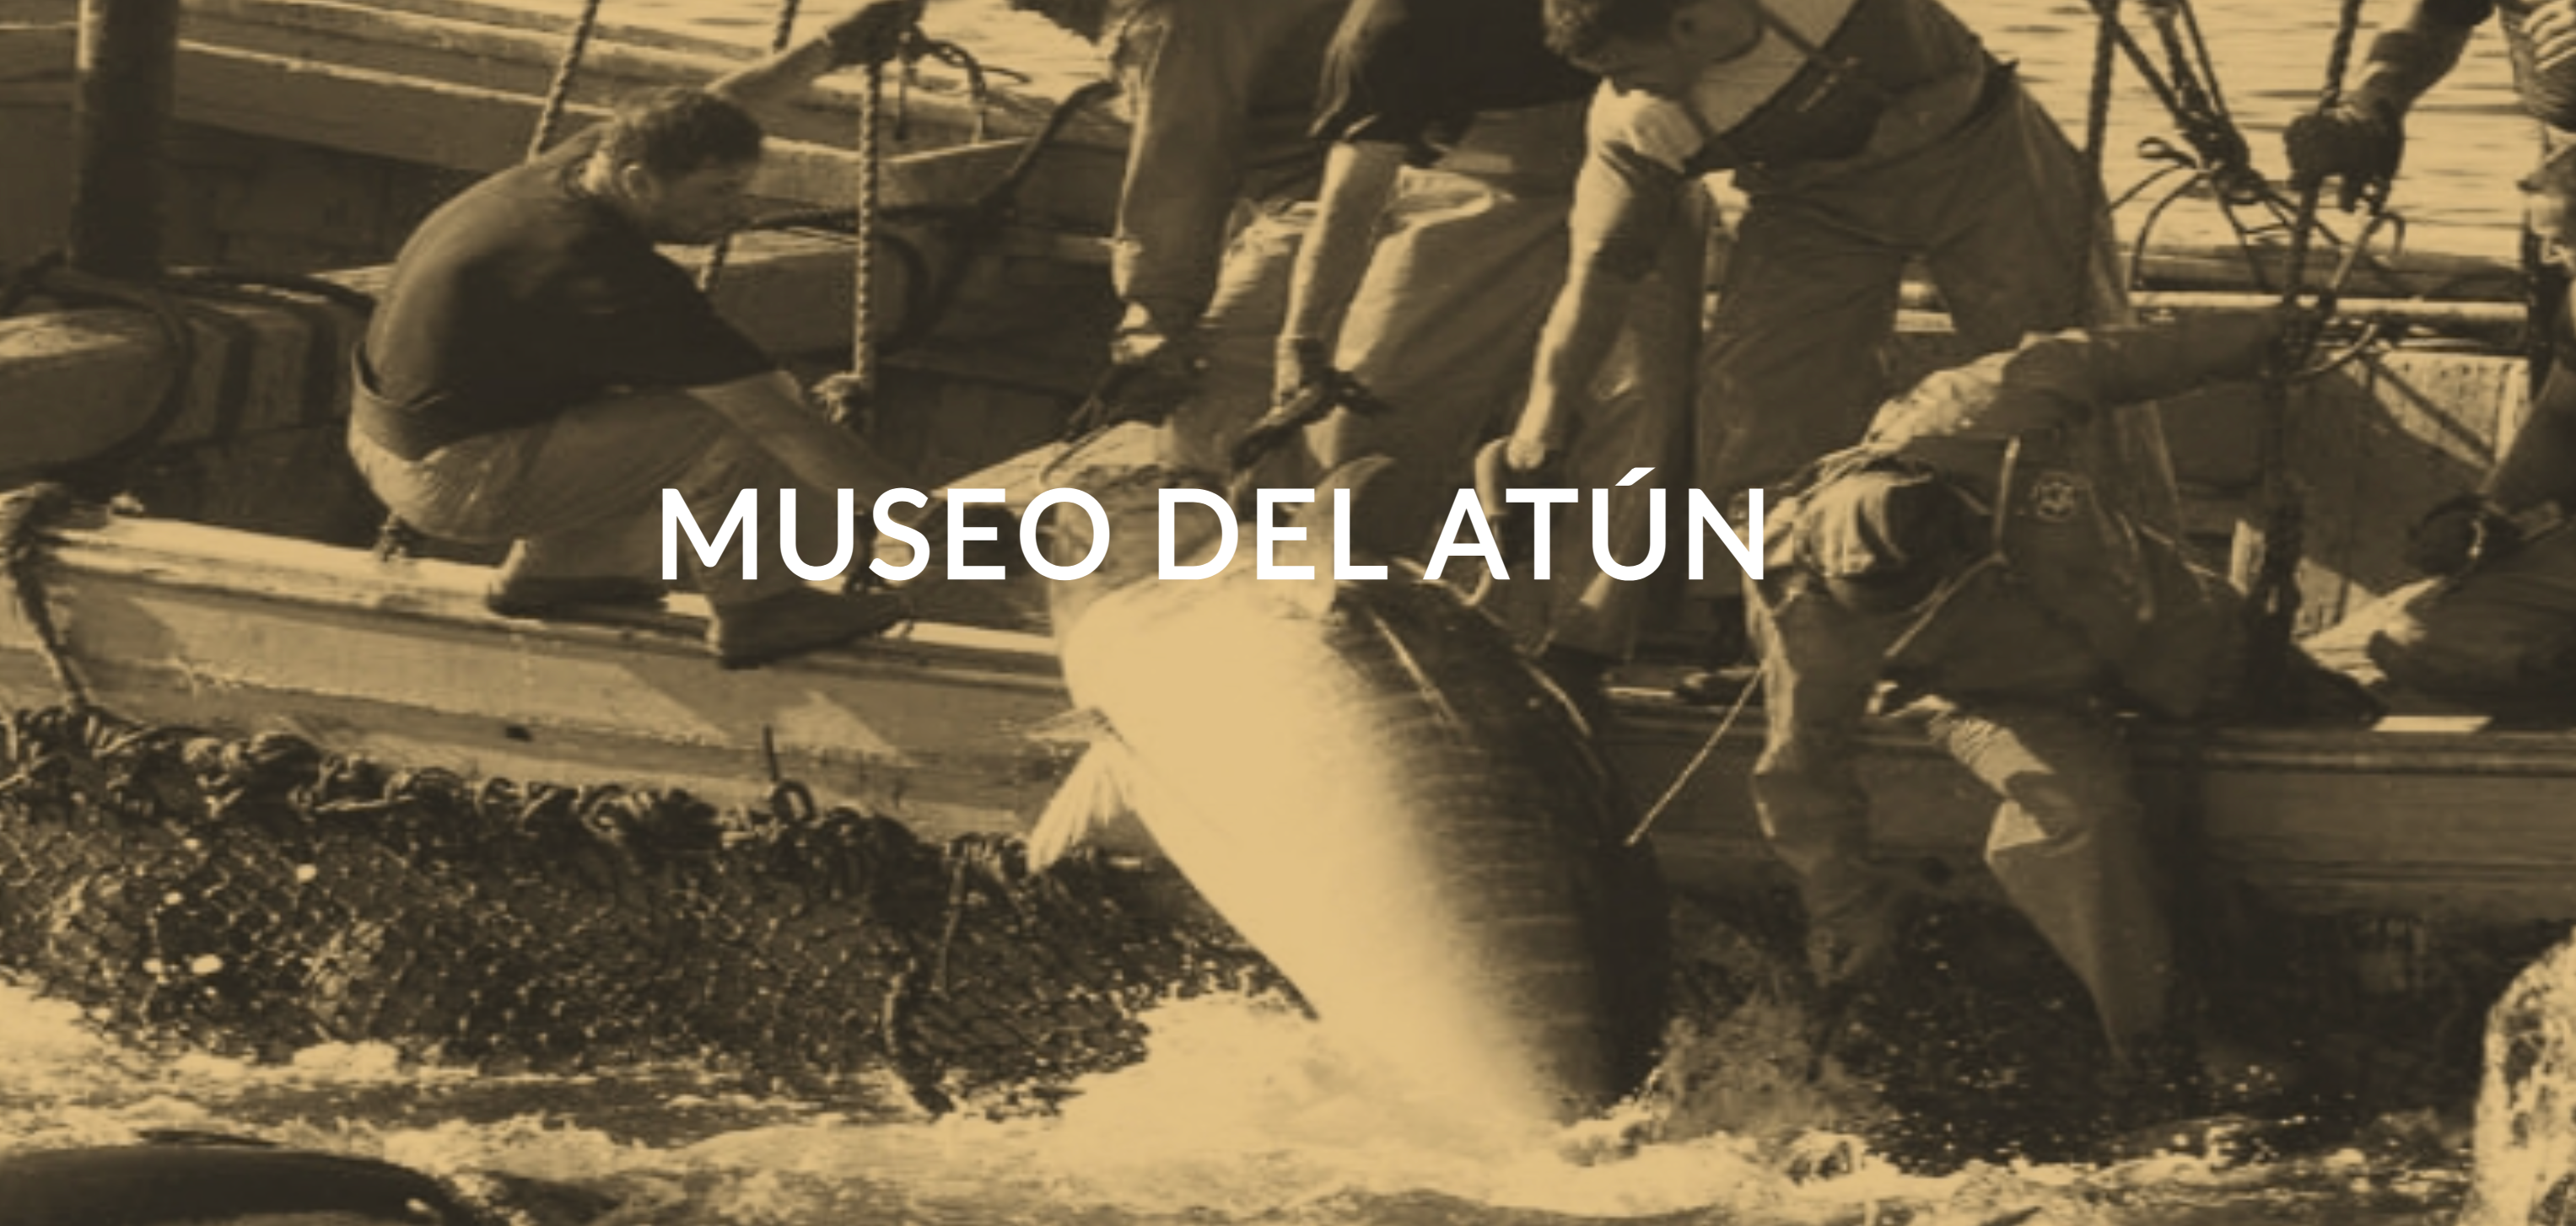 Museo del atún La Chanca